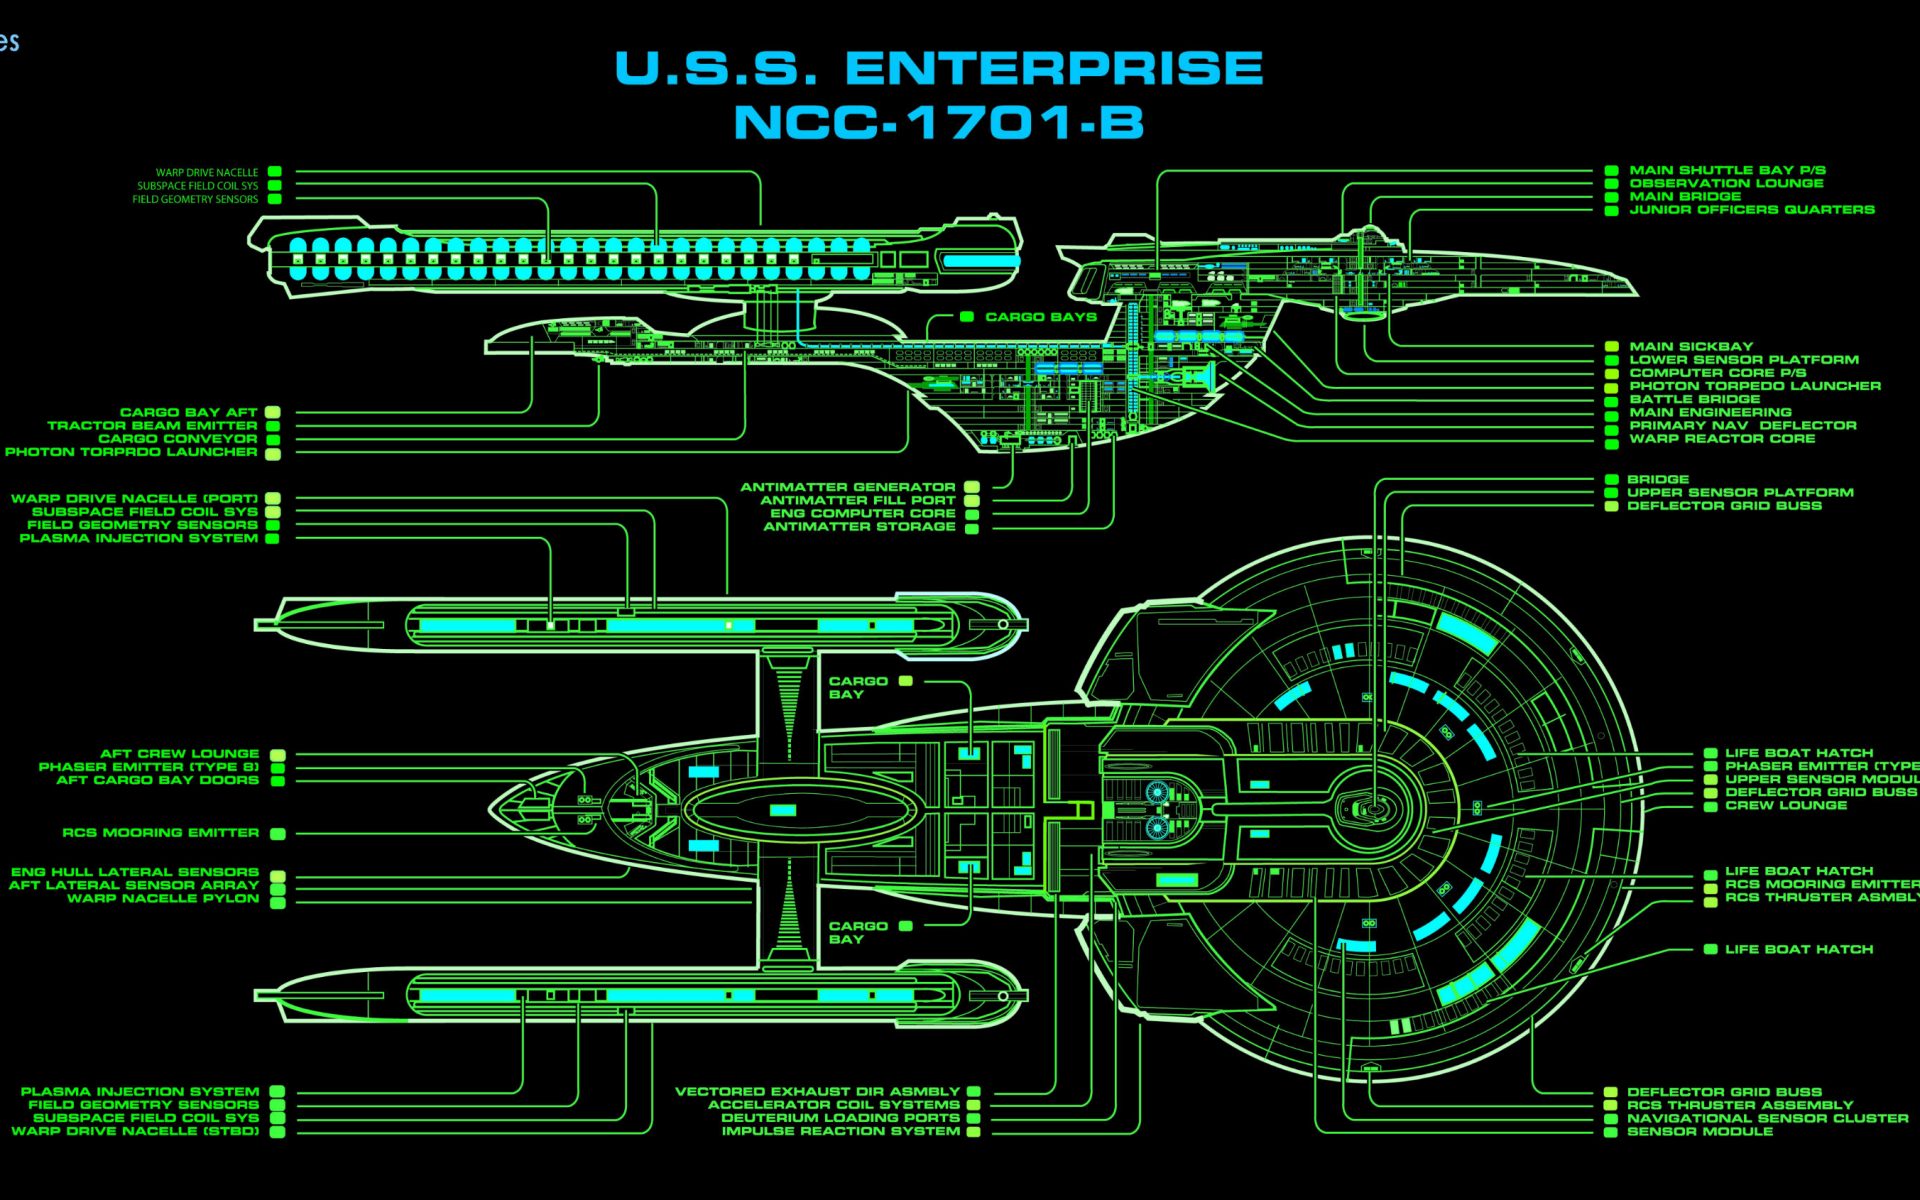 Star Trek Starship Enterprise Spaceship Green Diagram - Download hd